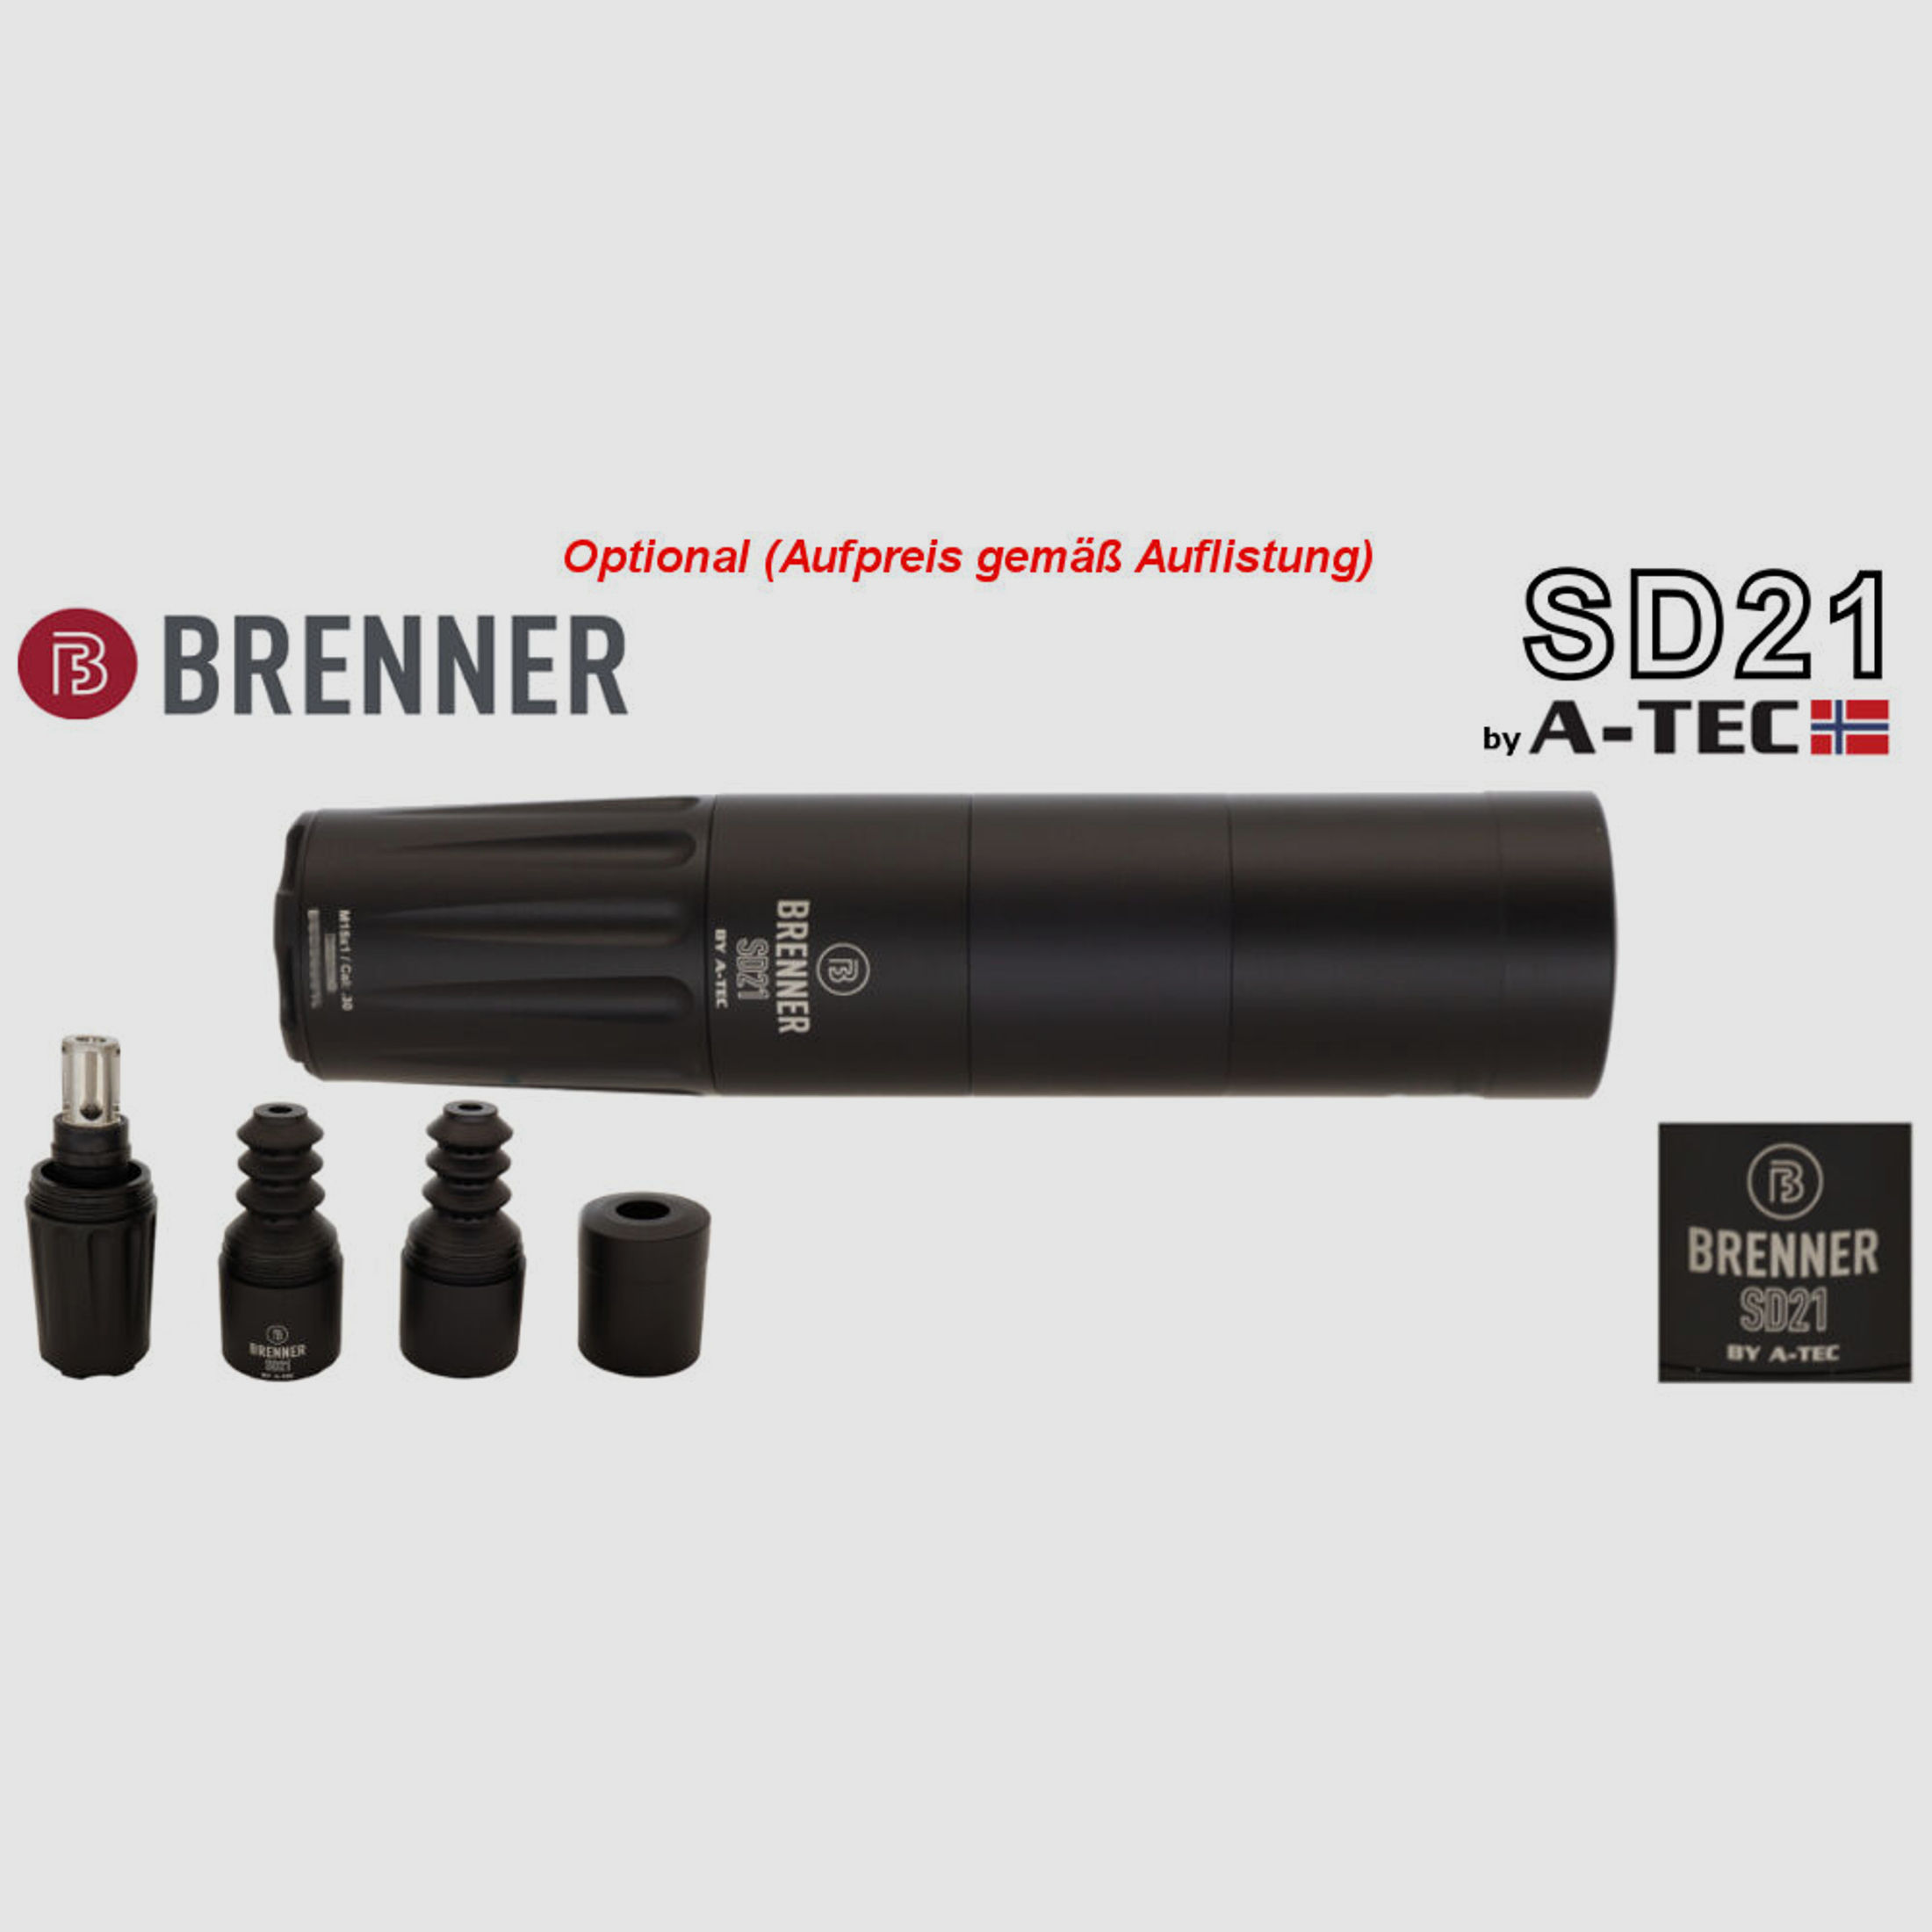 Brenner Komplettpaket:	 Brenner BR 20 Lochschaft mit Zeiss V6 2.5-15x56 BR20